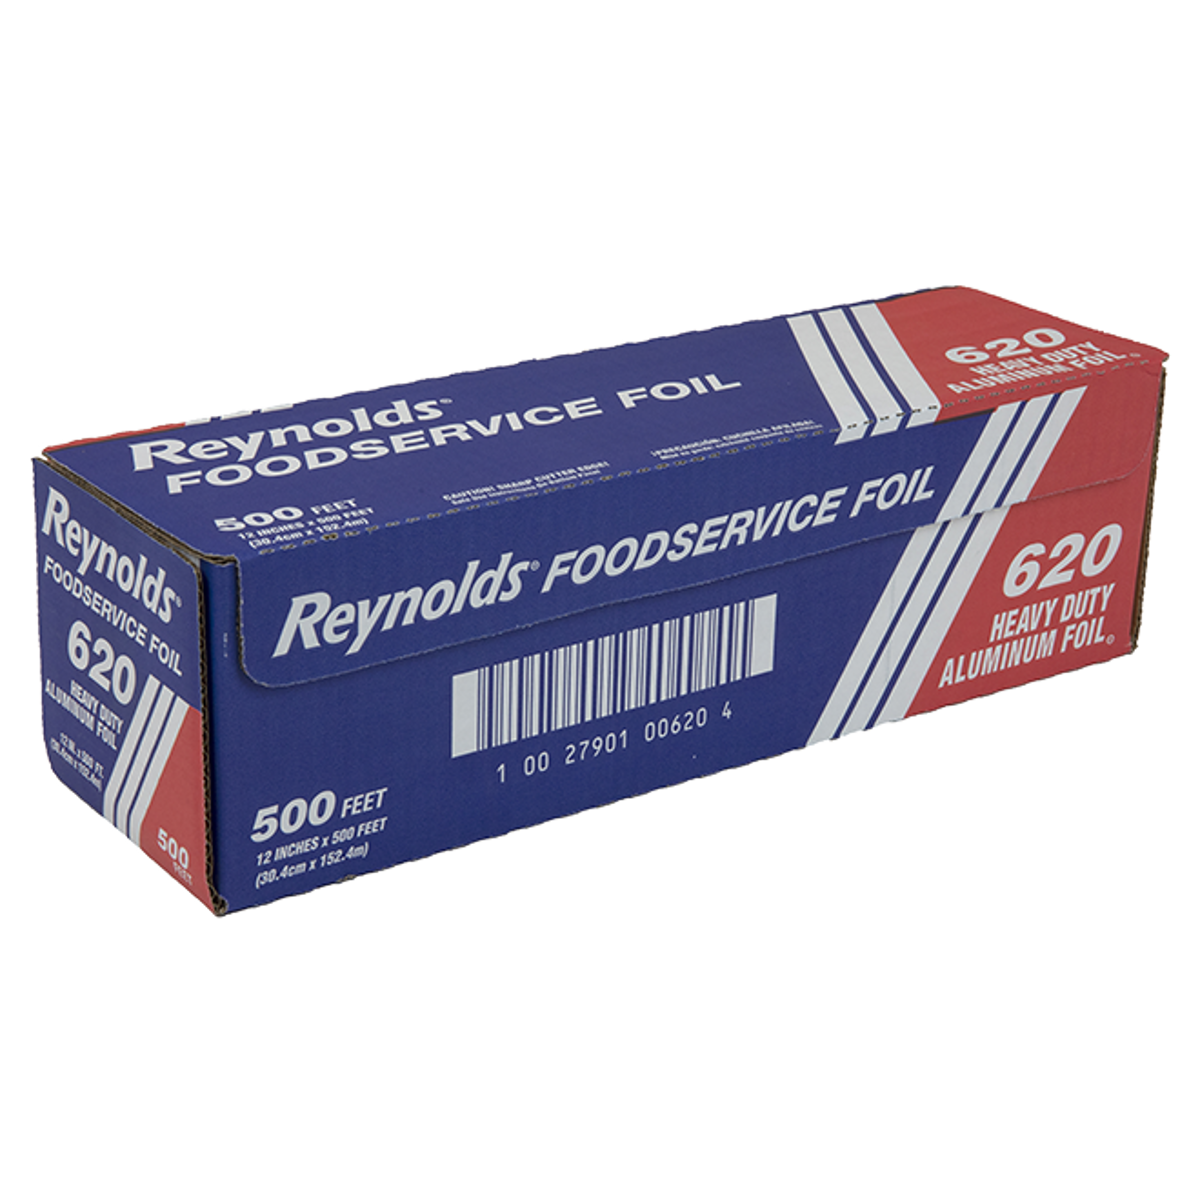 Reynolds Foil Sheets, Foodservice - 500 sheets